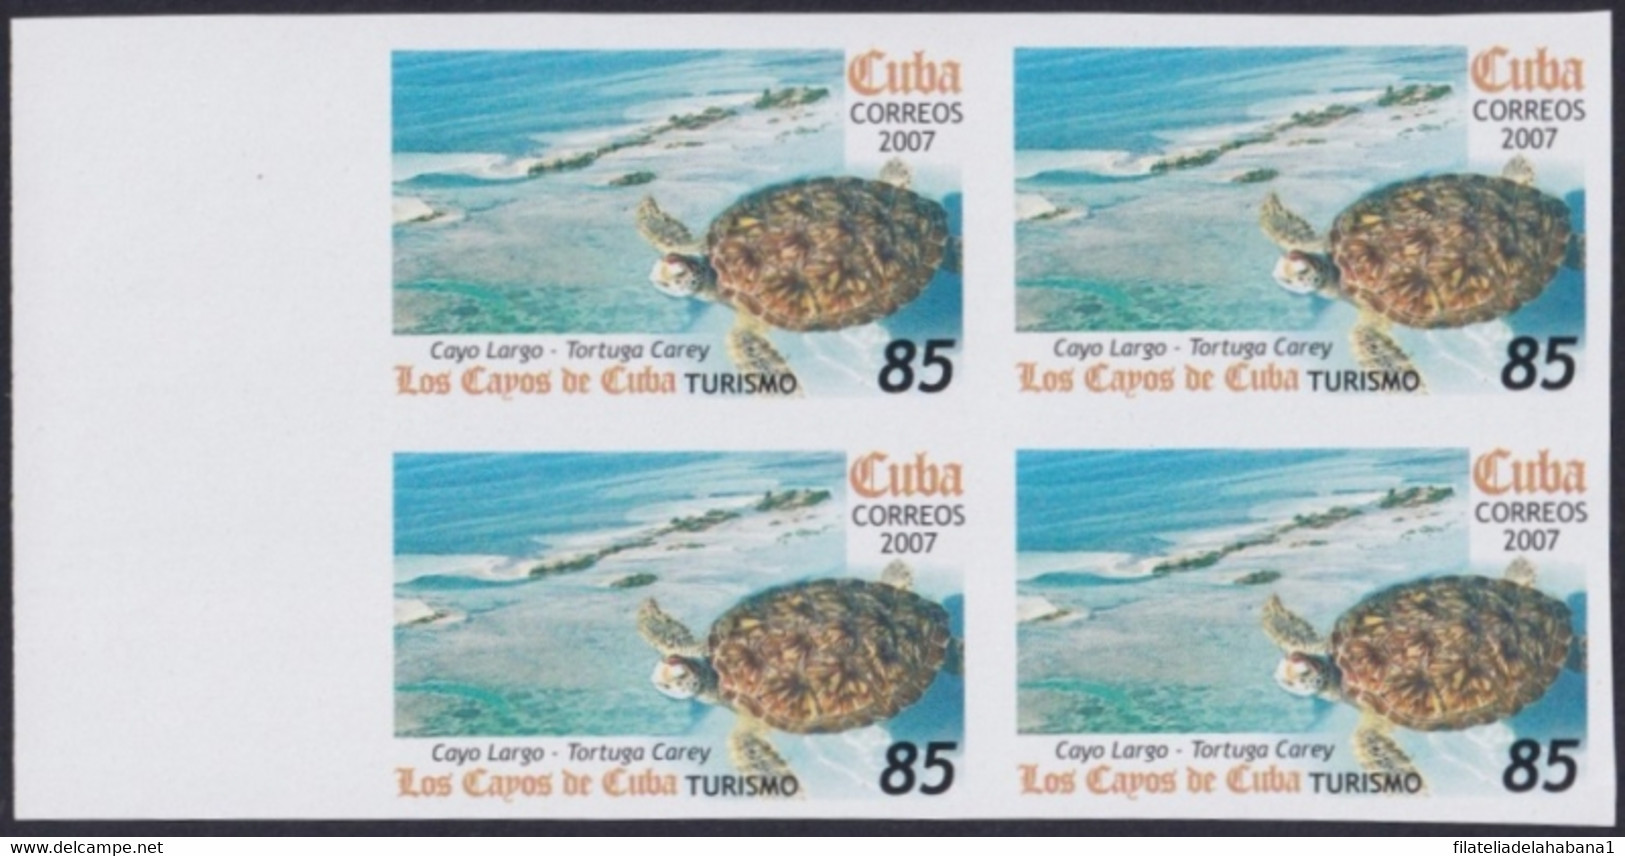 2007.701 CUBA 2007 85c MNH IMPERFORATED PROOF VIRGEN KEY FAUNA TURTLE TORTUGAS. - Sin Dentar, Pruebas De Impresión Y Variedades